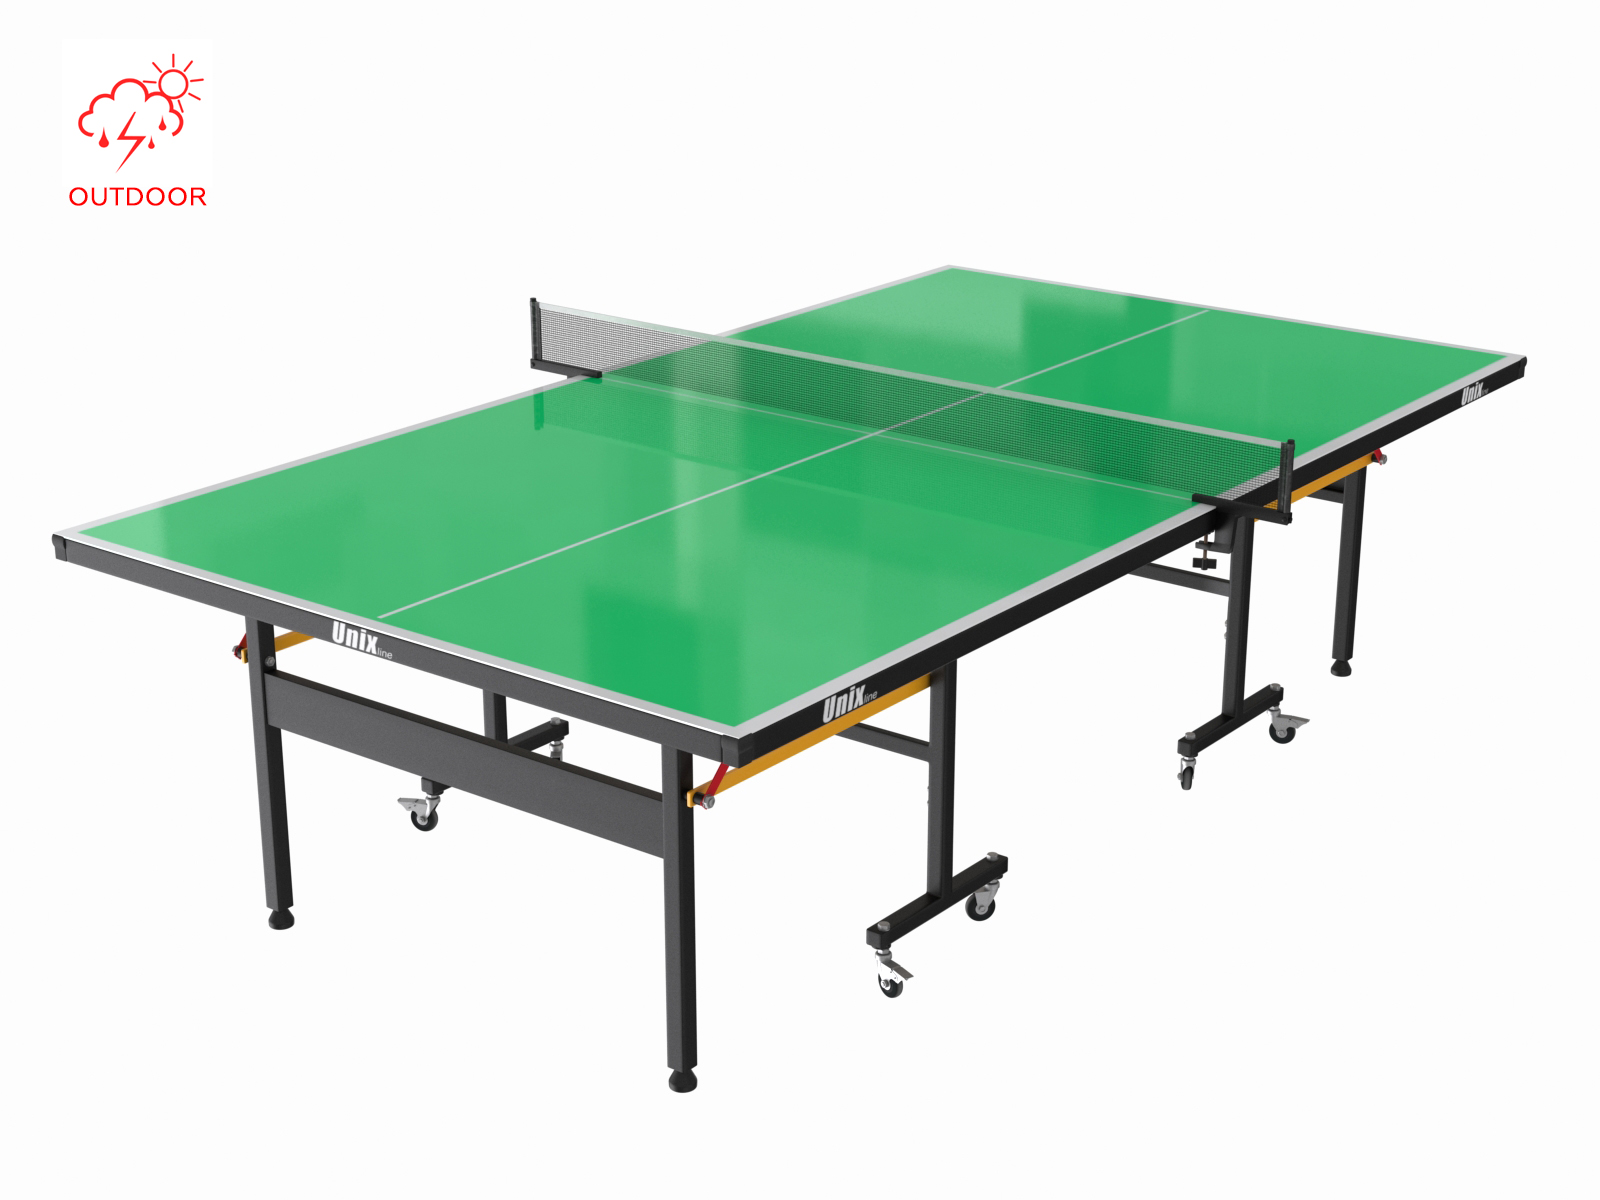 Всепогодный теннисный стол UNIX Line outdoor 6mm (green) - 2 